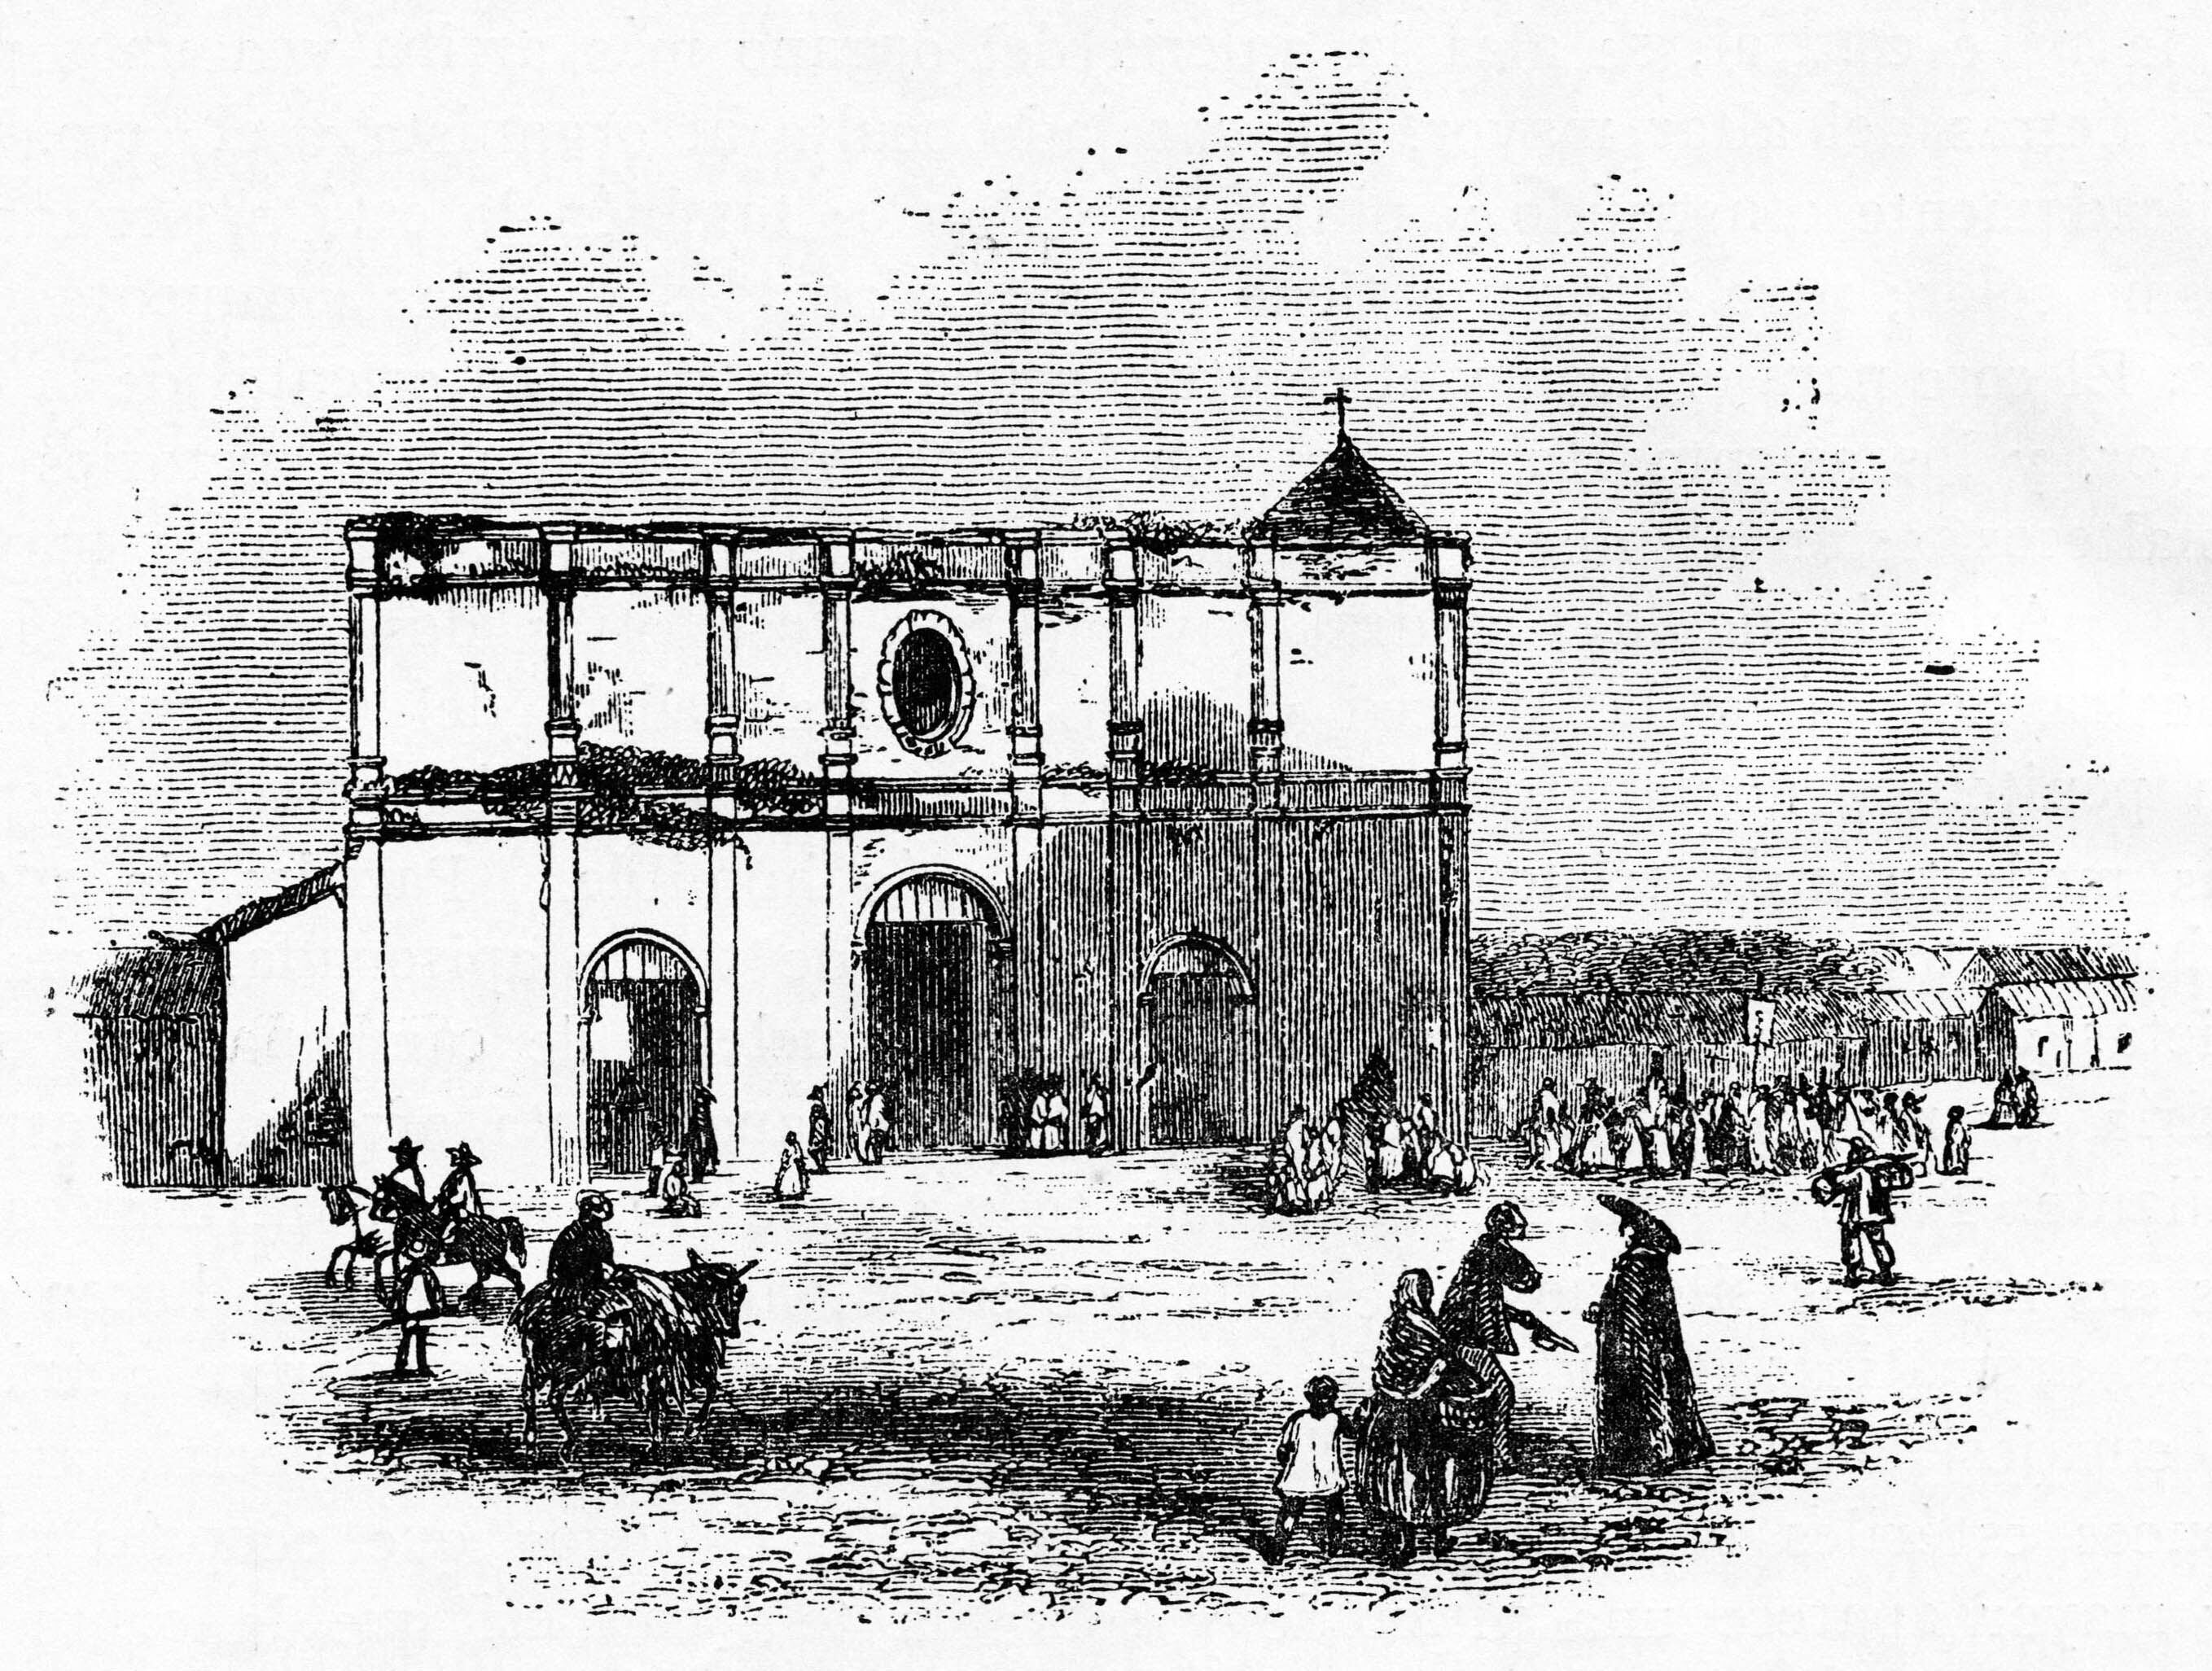 La vieja iglesia parroquial de San José (para entonces catedral) vista desde la Plaza Principal, en 1858. Grabado de la época por Ramón Páez.